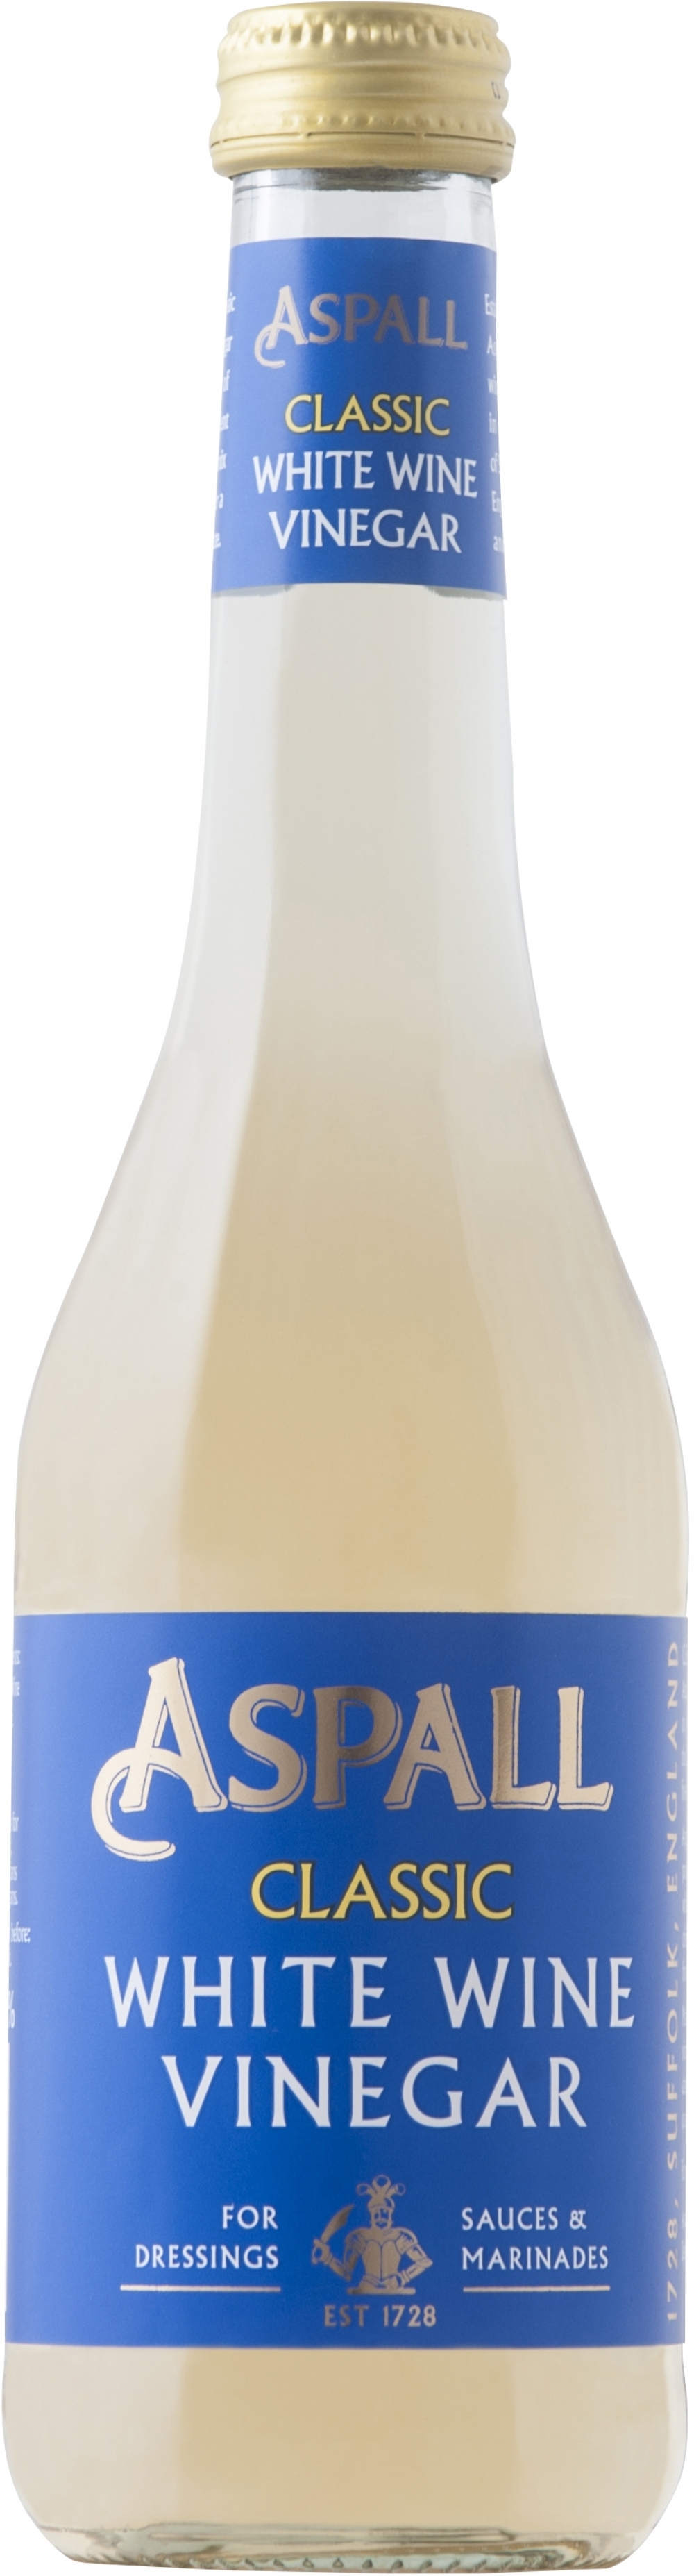 ASPALL Classic White Wine Vinegar 350ml